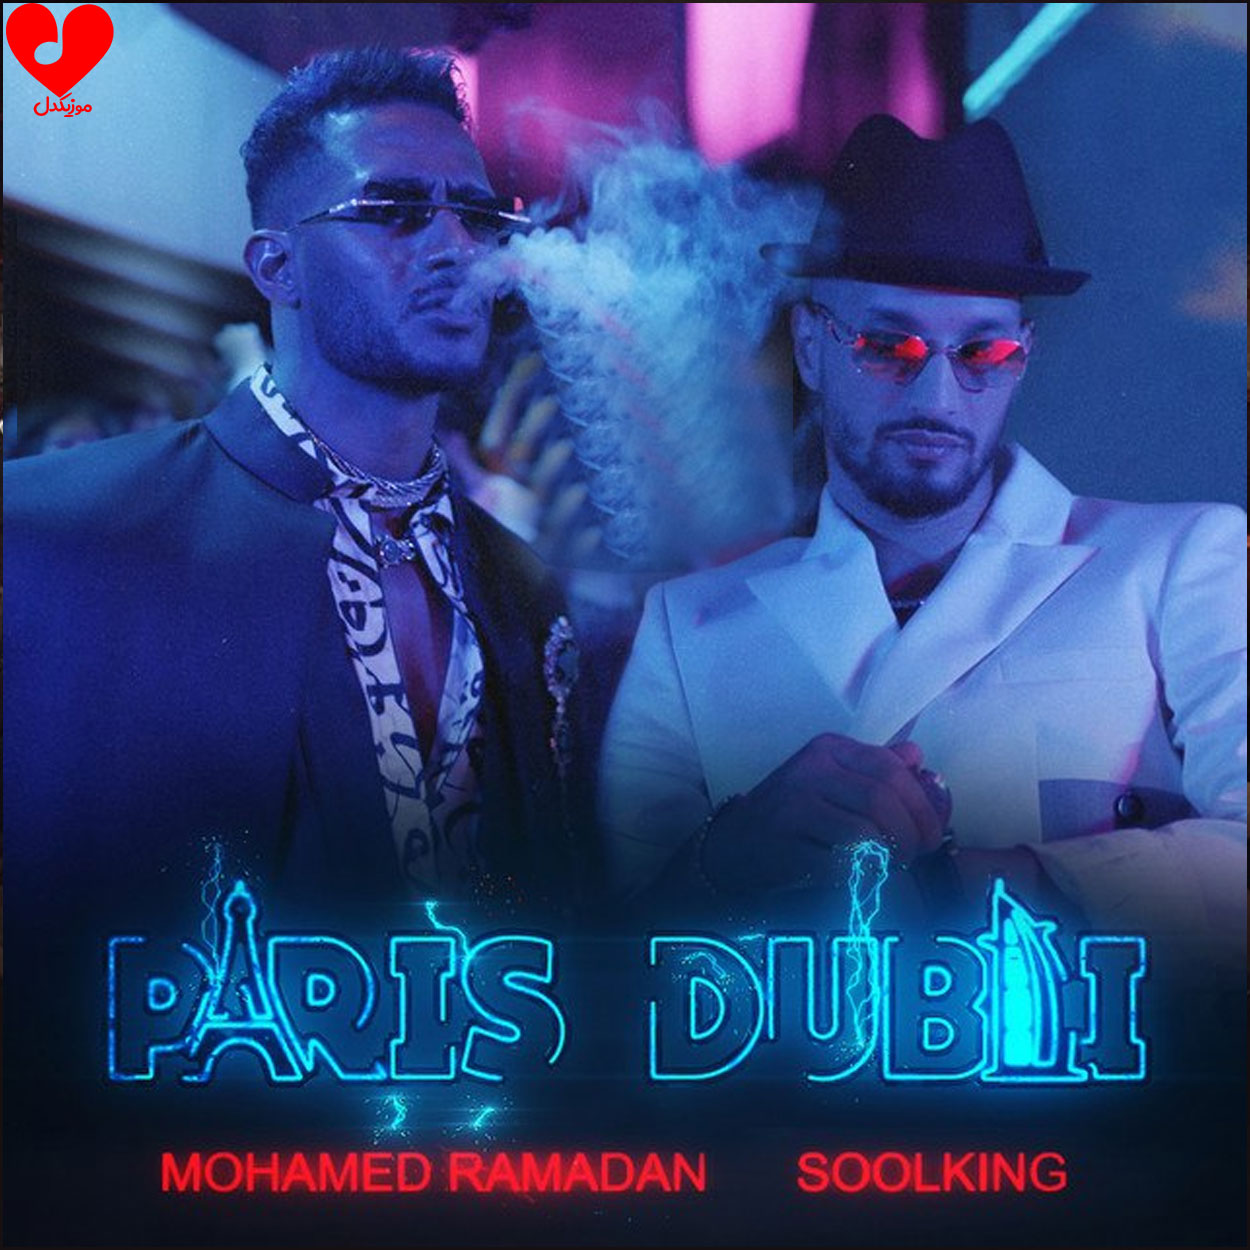 دانلود آهنگ پاریس دبی paris dubai از محمد رمضان